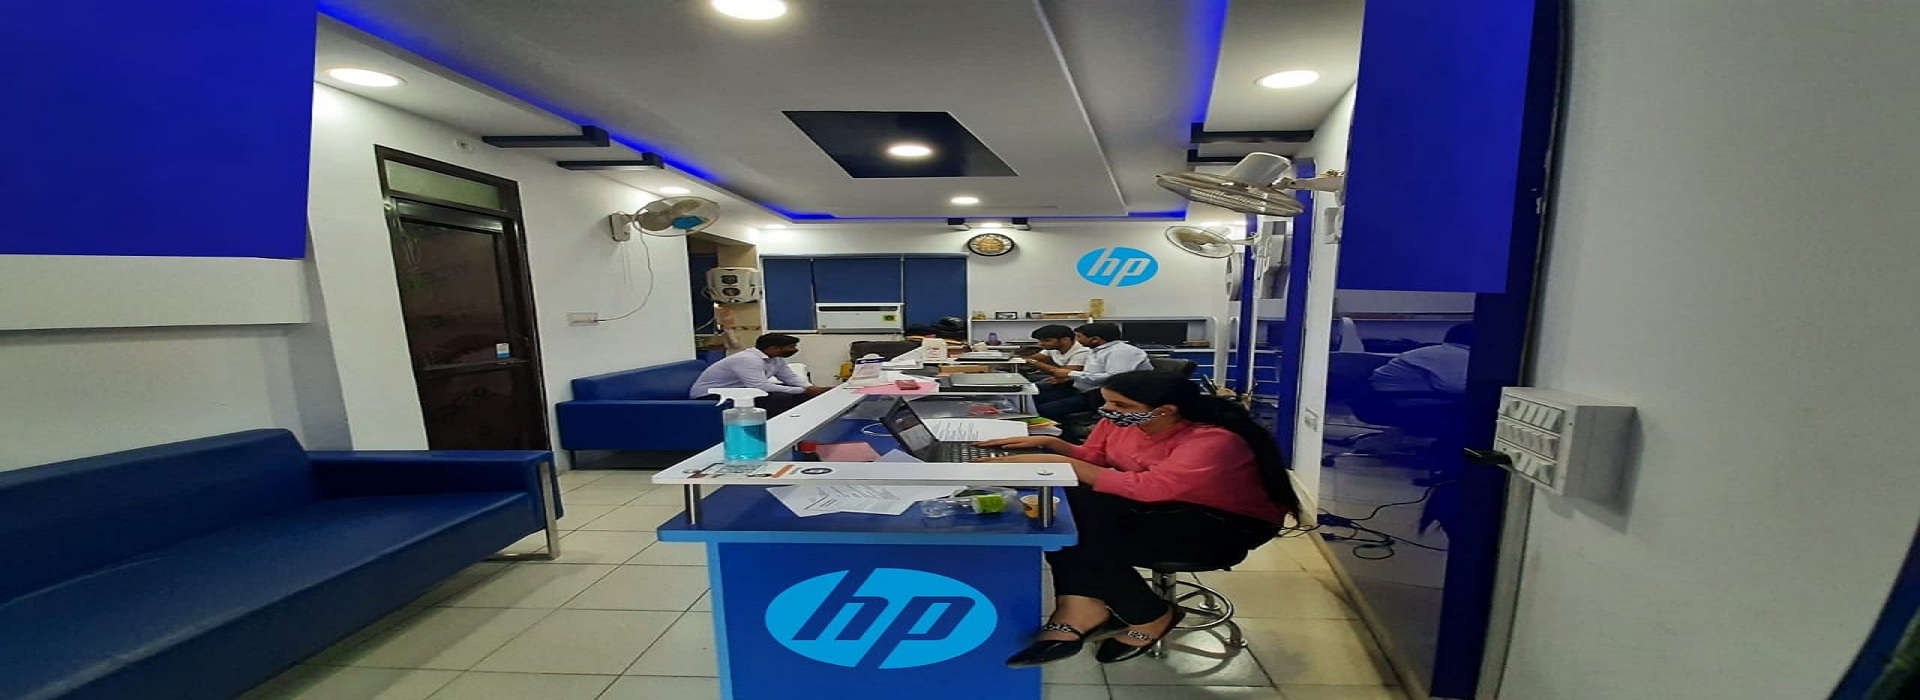 Hp Service Centre In Rajendra Place Delhi